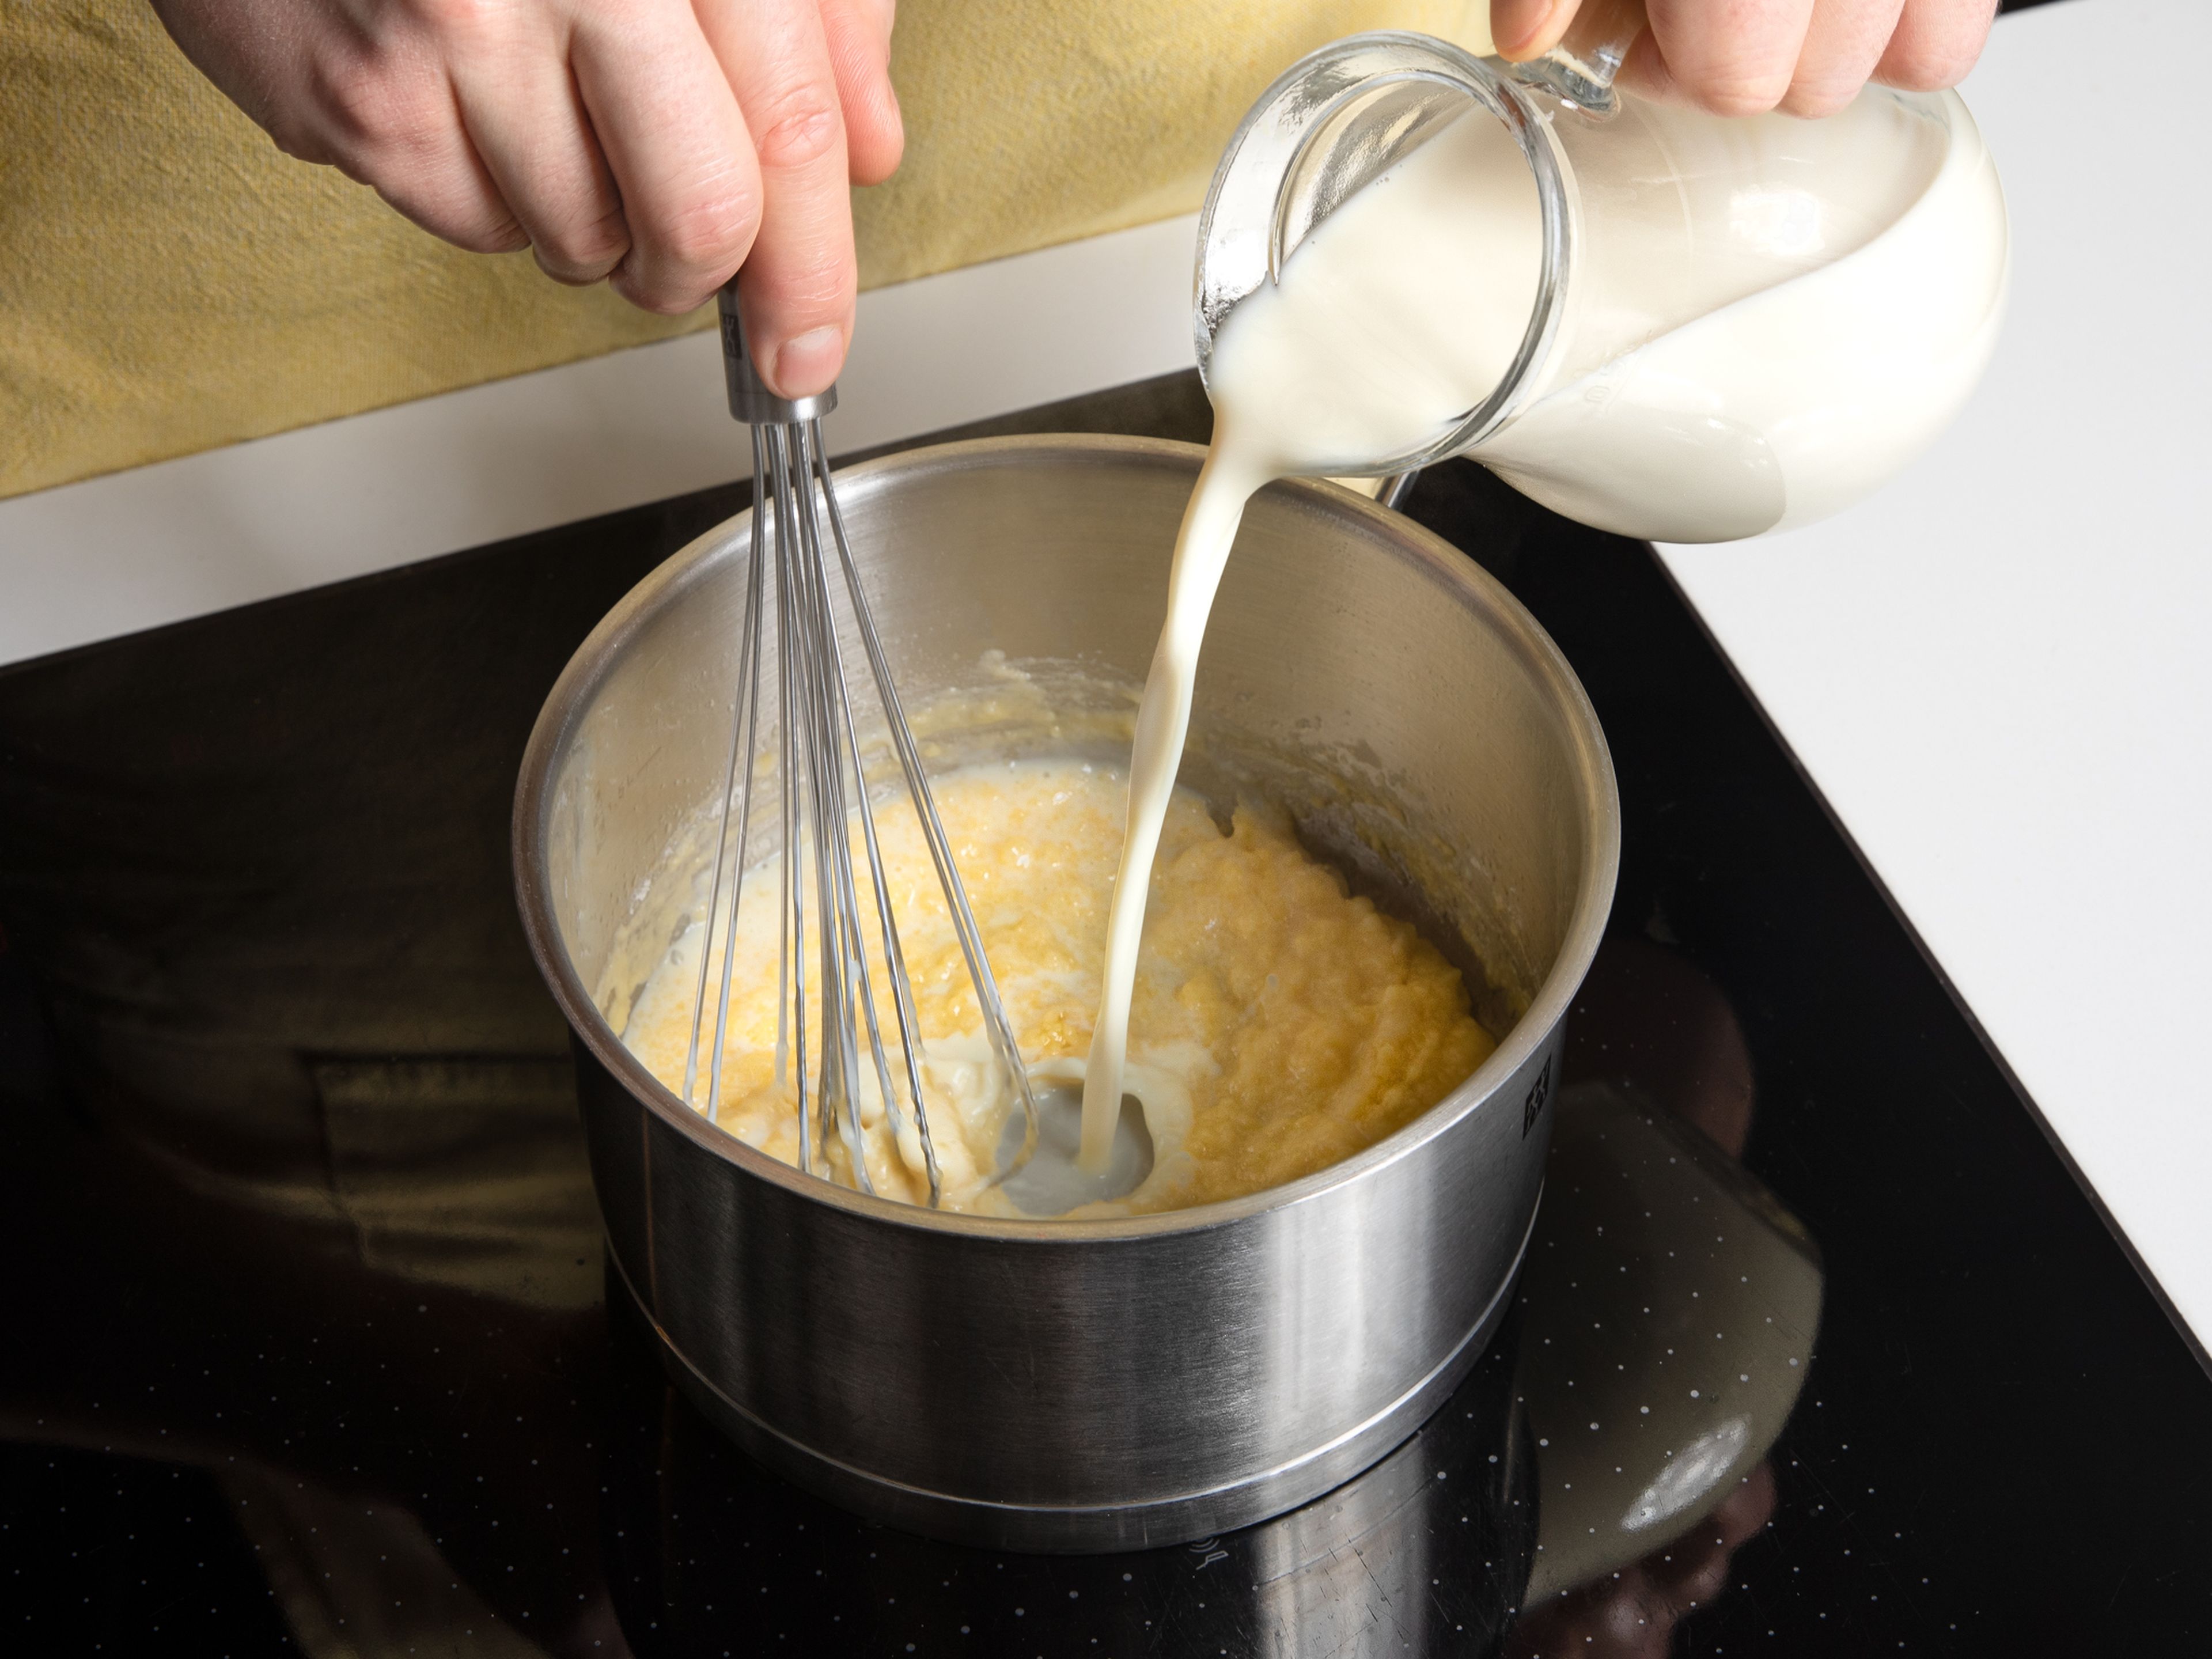 To make vegan béchamel, melt margarine in saucepan. Whisk in flour, then slowly whisk
in warm soymilk in a steady stream.